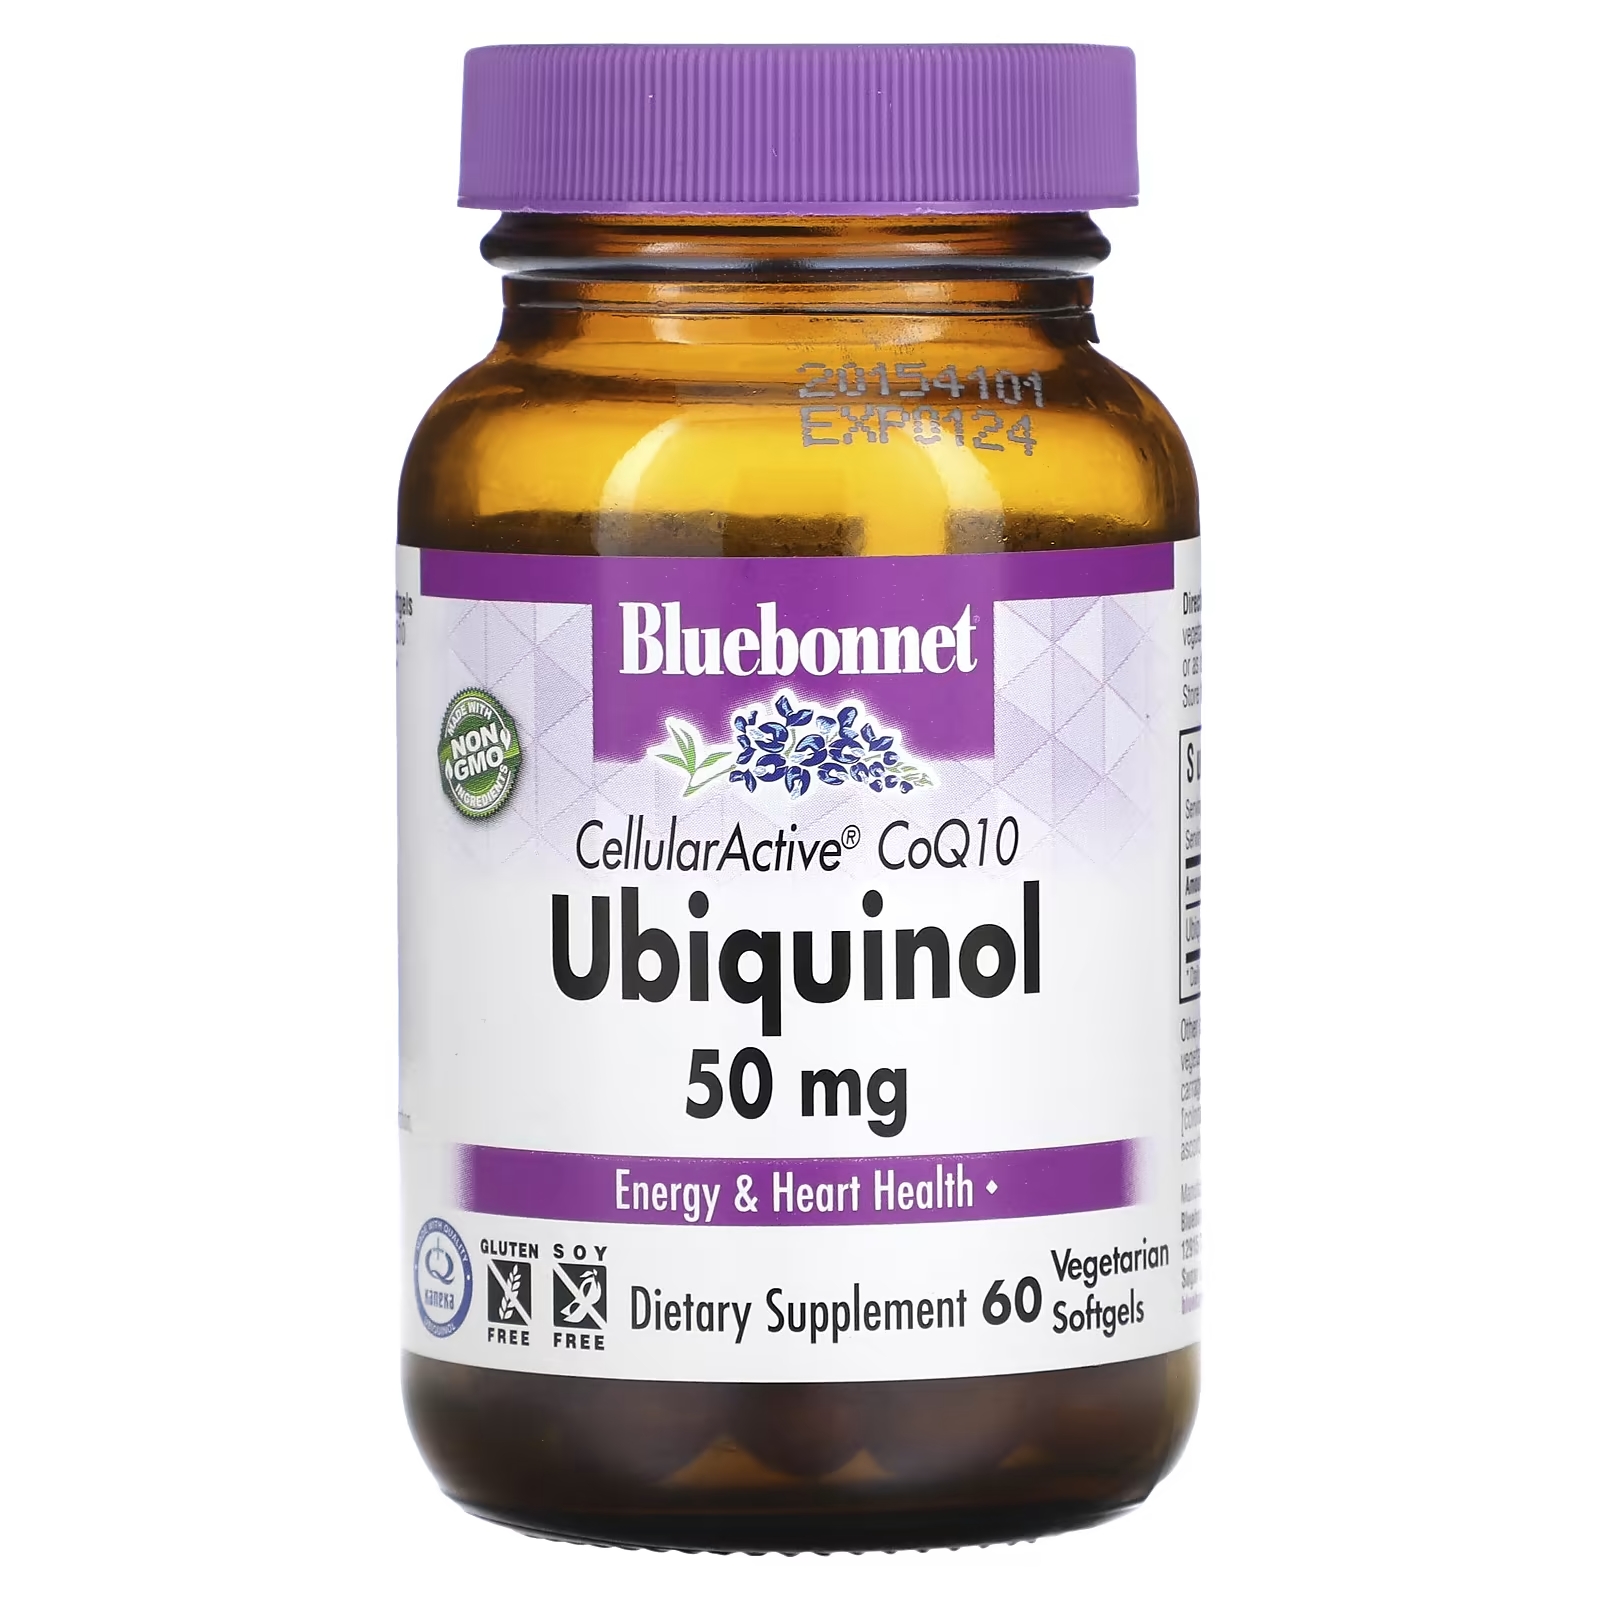 Bluebonnet Nutrition Ubiquinol Cellular Active CoQ10 50 мг, 60 растительных капсул bluebonnet nutrition cellularactive coq10 ubiquinol 100 мг 60 вегетарианских капсул